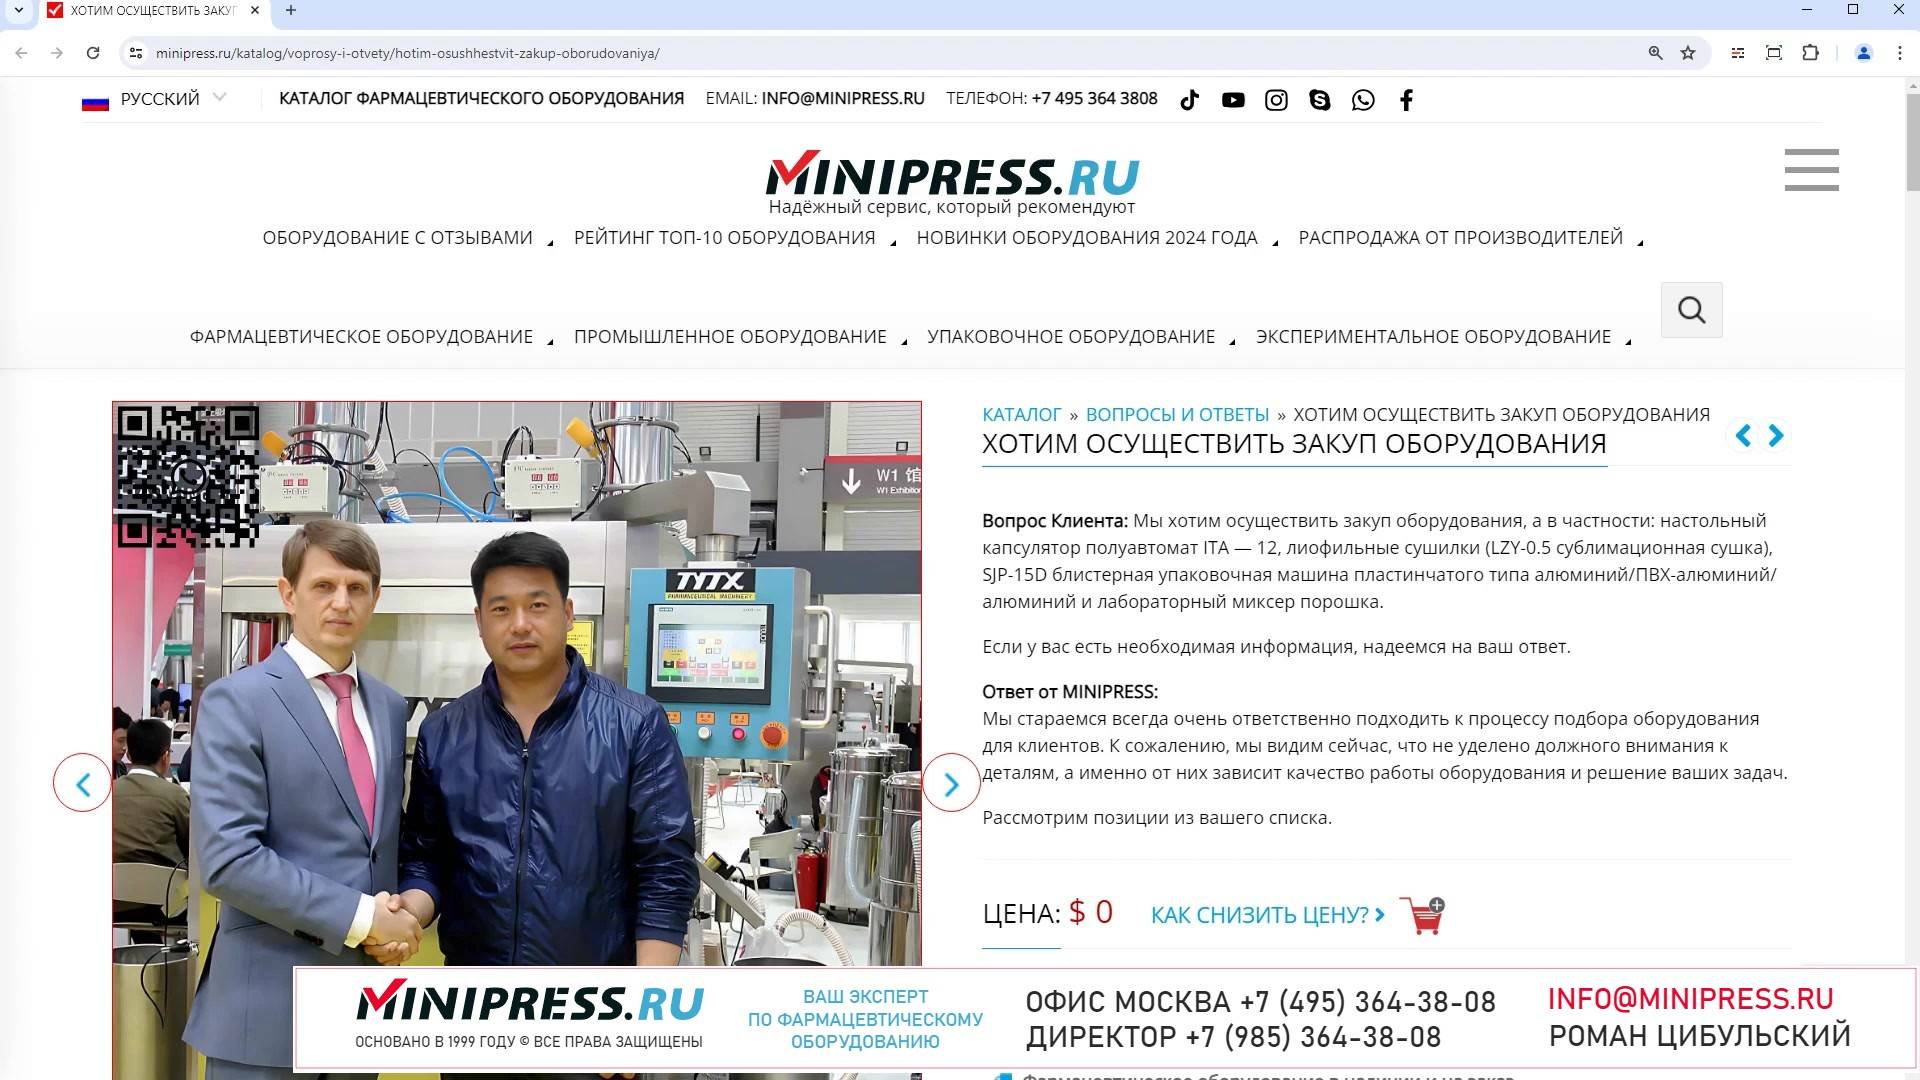 Minipress.ru Хотим осуществить закуп оборудования